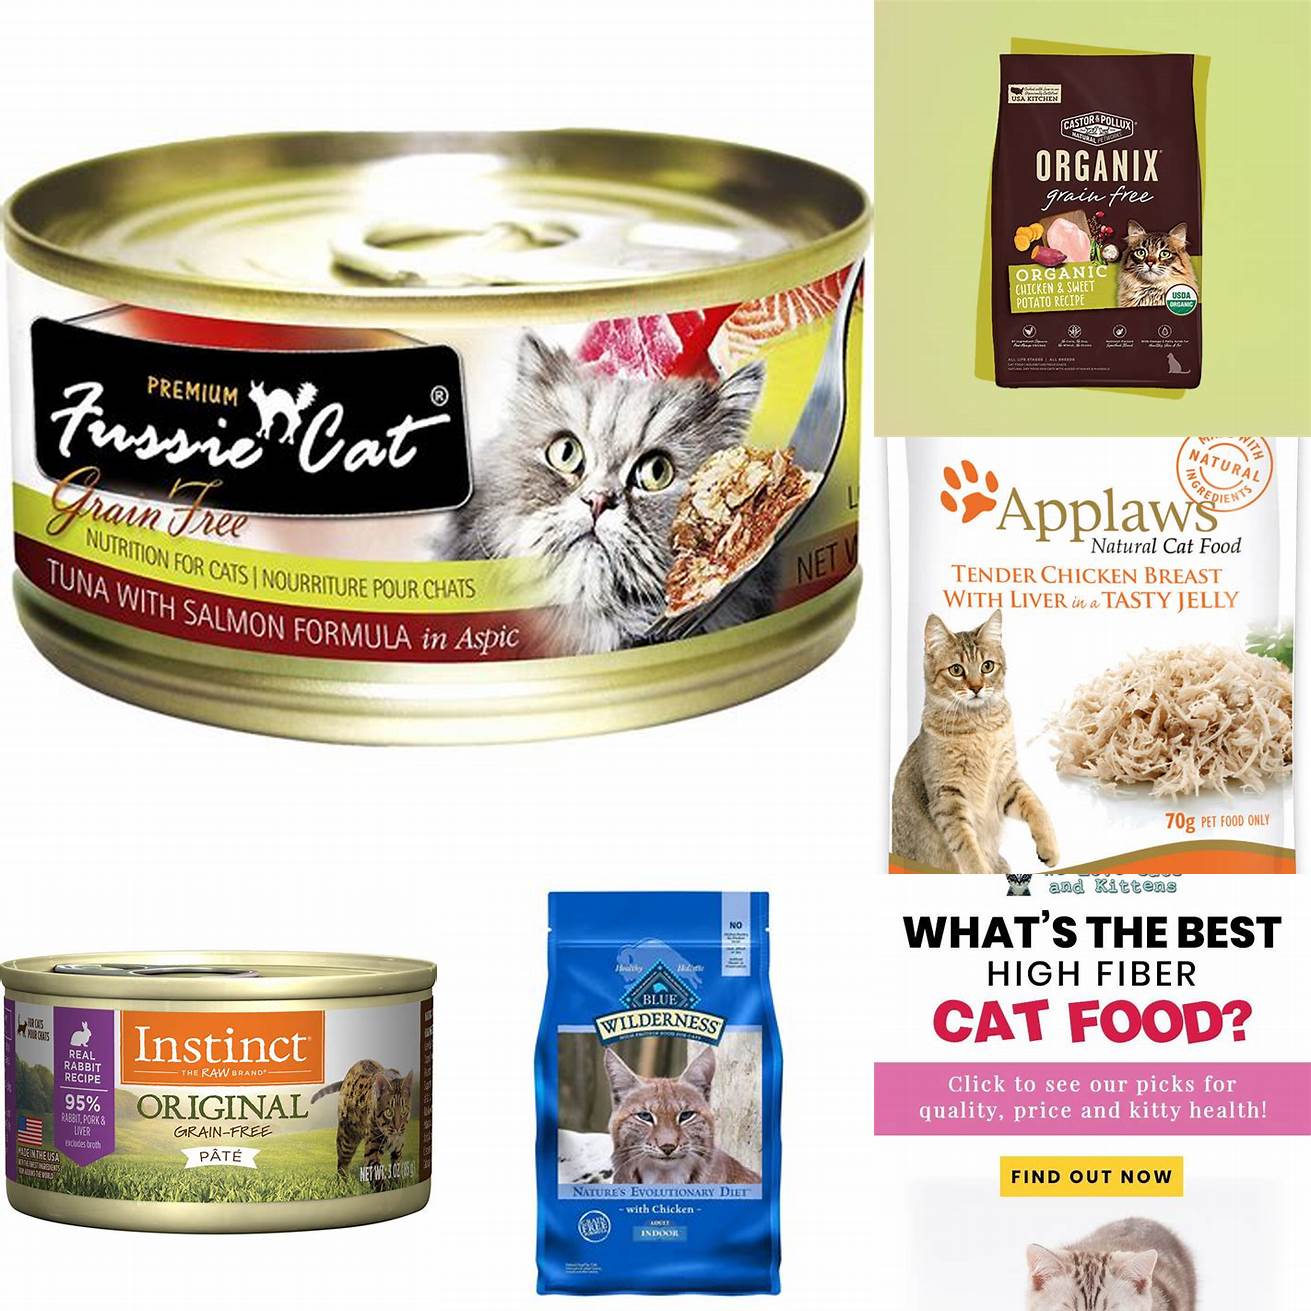 High-quality cat food